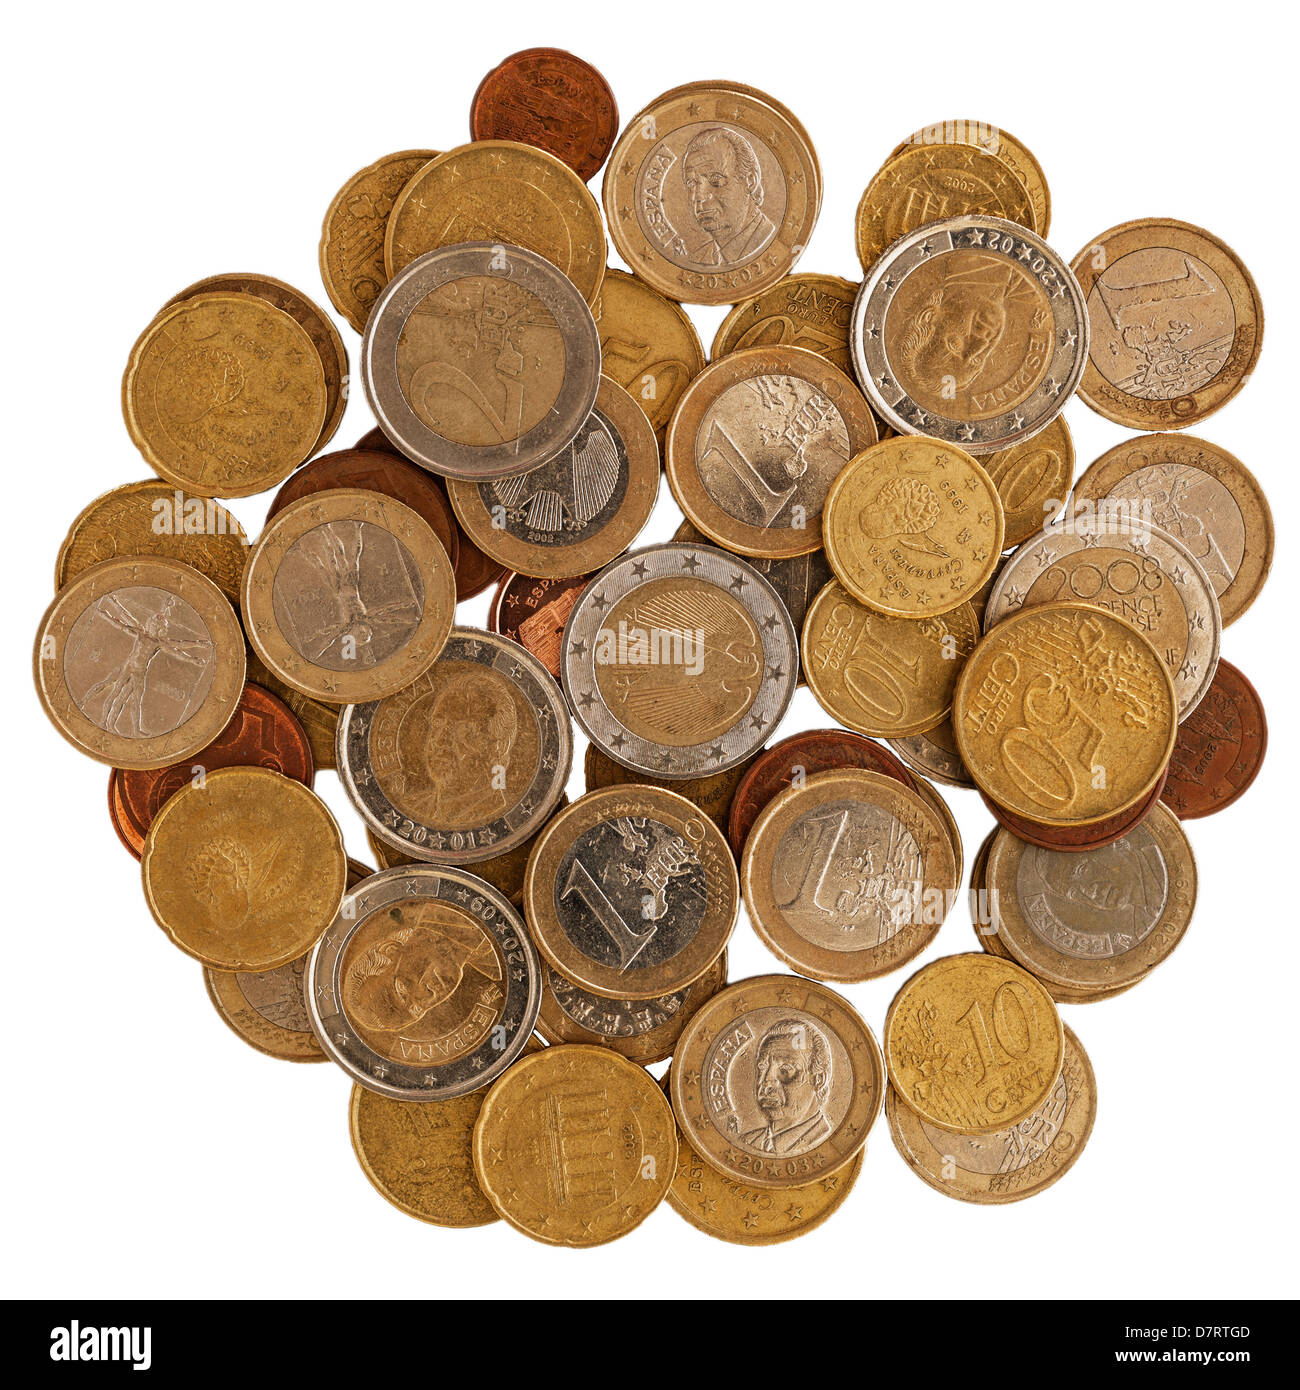 L'Espagnol y compris pièces mixtes d'euros et cents sur un fond blanc Banque D'Images